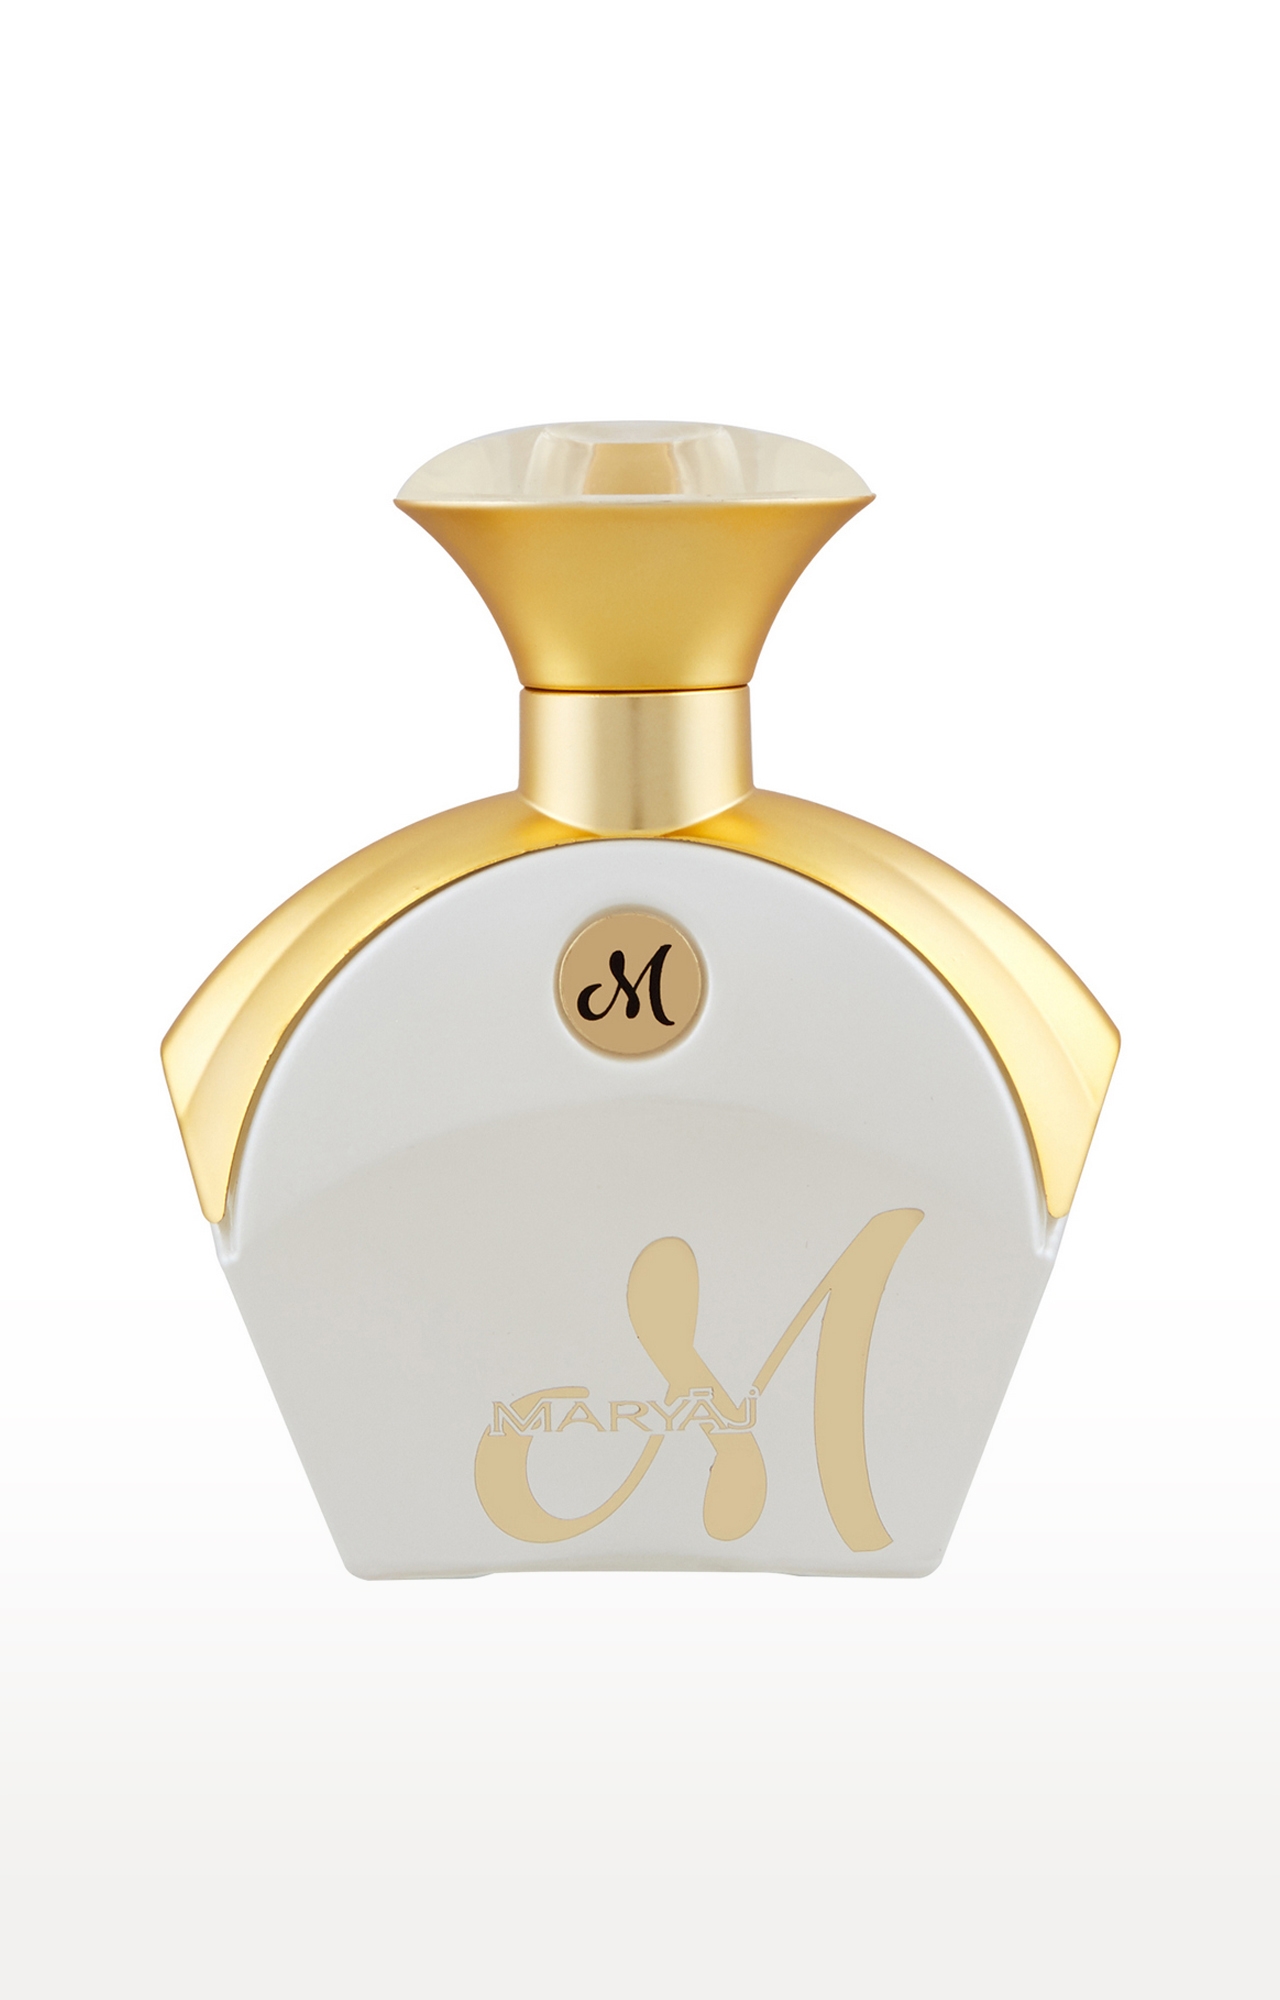 Maryaj Eau De Parfum M White Gift For Her Gift For Women Long Lasting Scent Spray - Made In Dubai